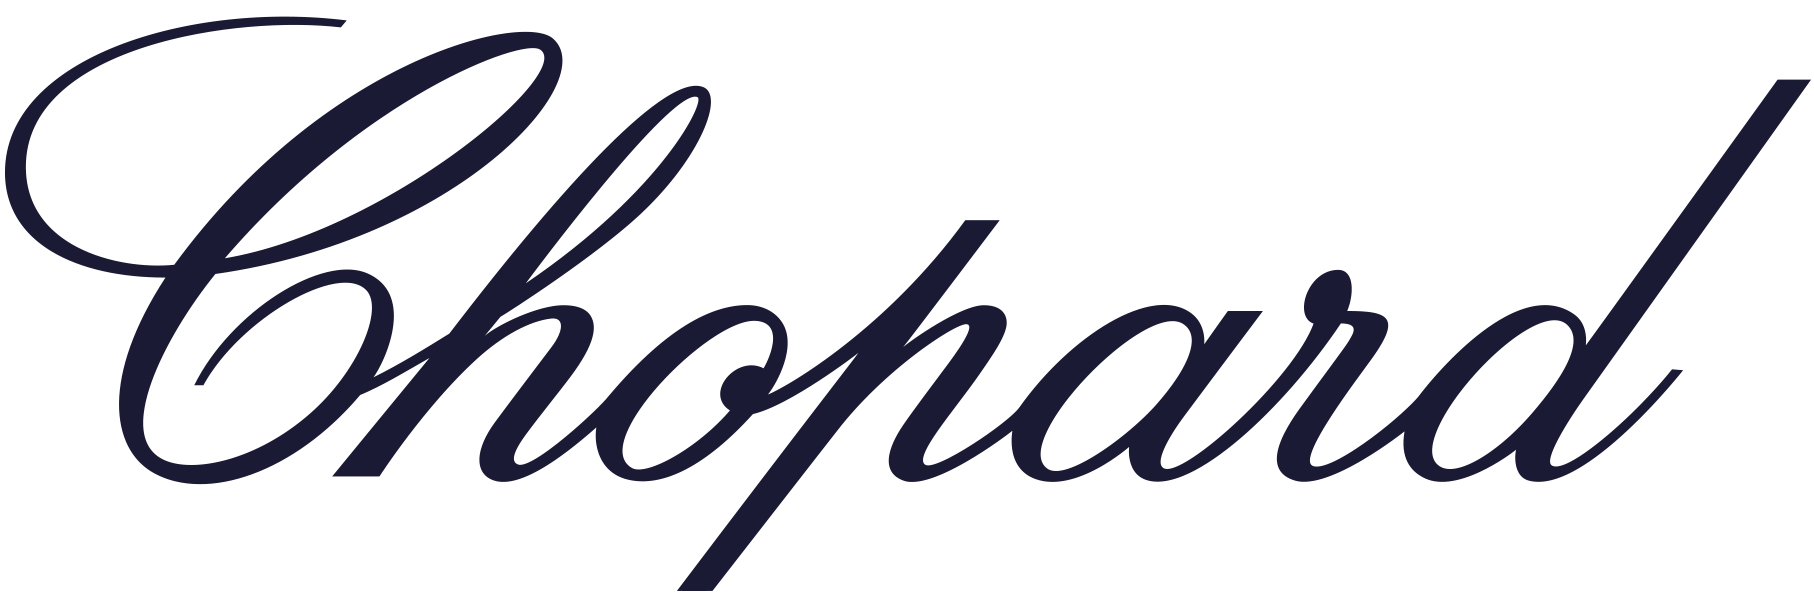 logo_chopard_big